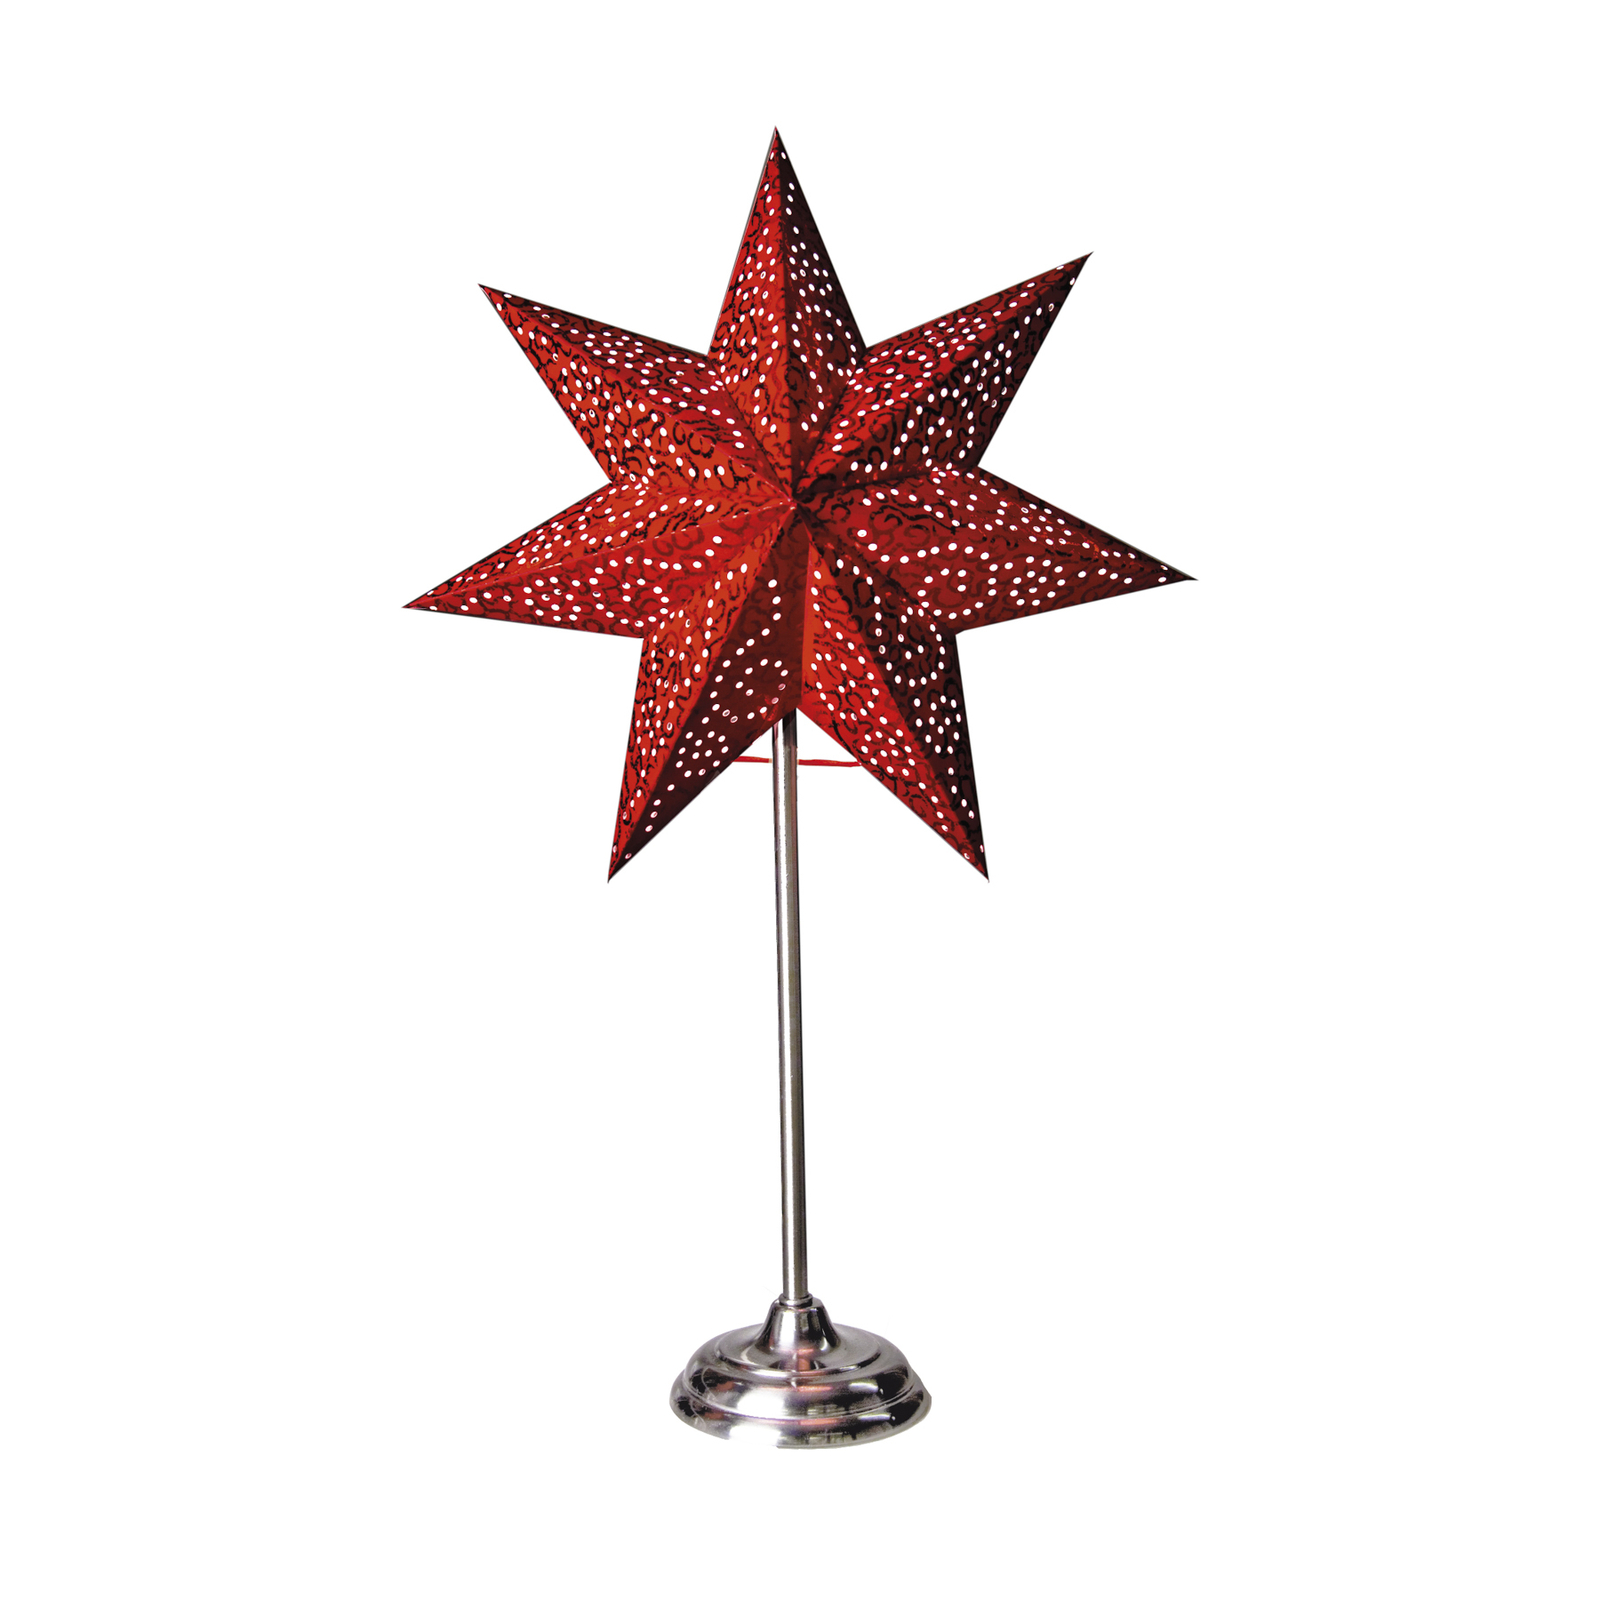 Antique stående stjerne, metal/papir, rød